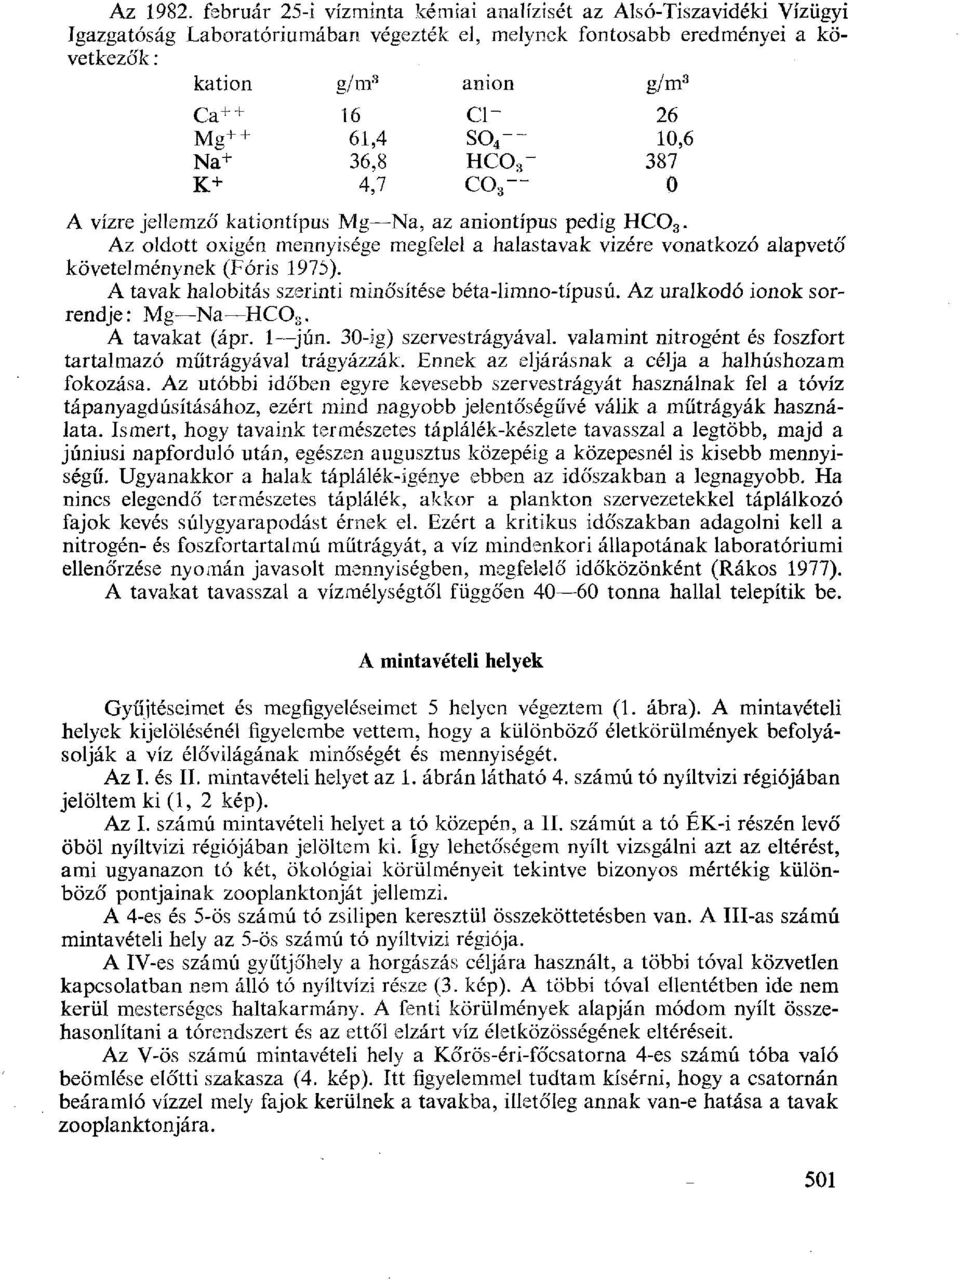 + 61,4 so 4 -- 10,6 Na + 36,8 HC03-387 K+ 4,7 C03-0 A vízre jellemző kationtípus Mg Na, az aniontípus pedig HC0 3.